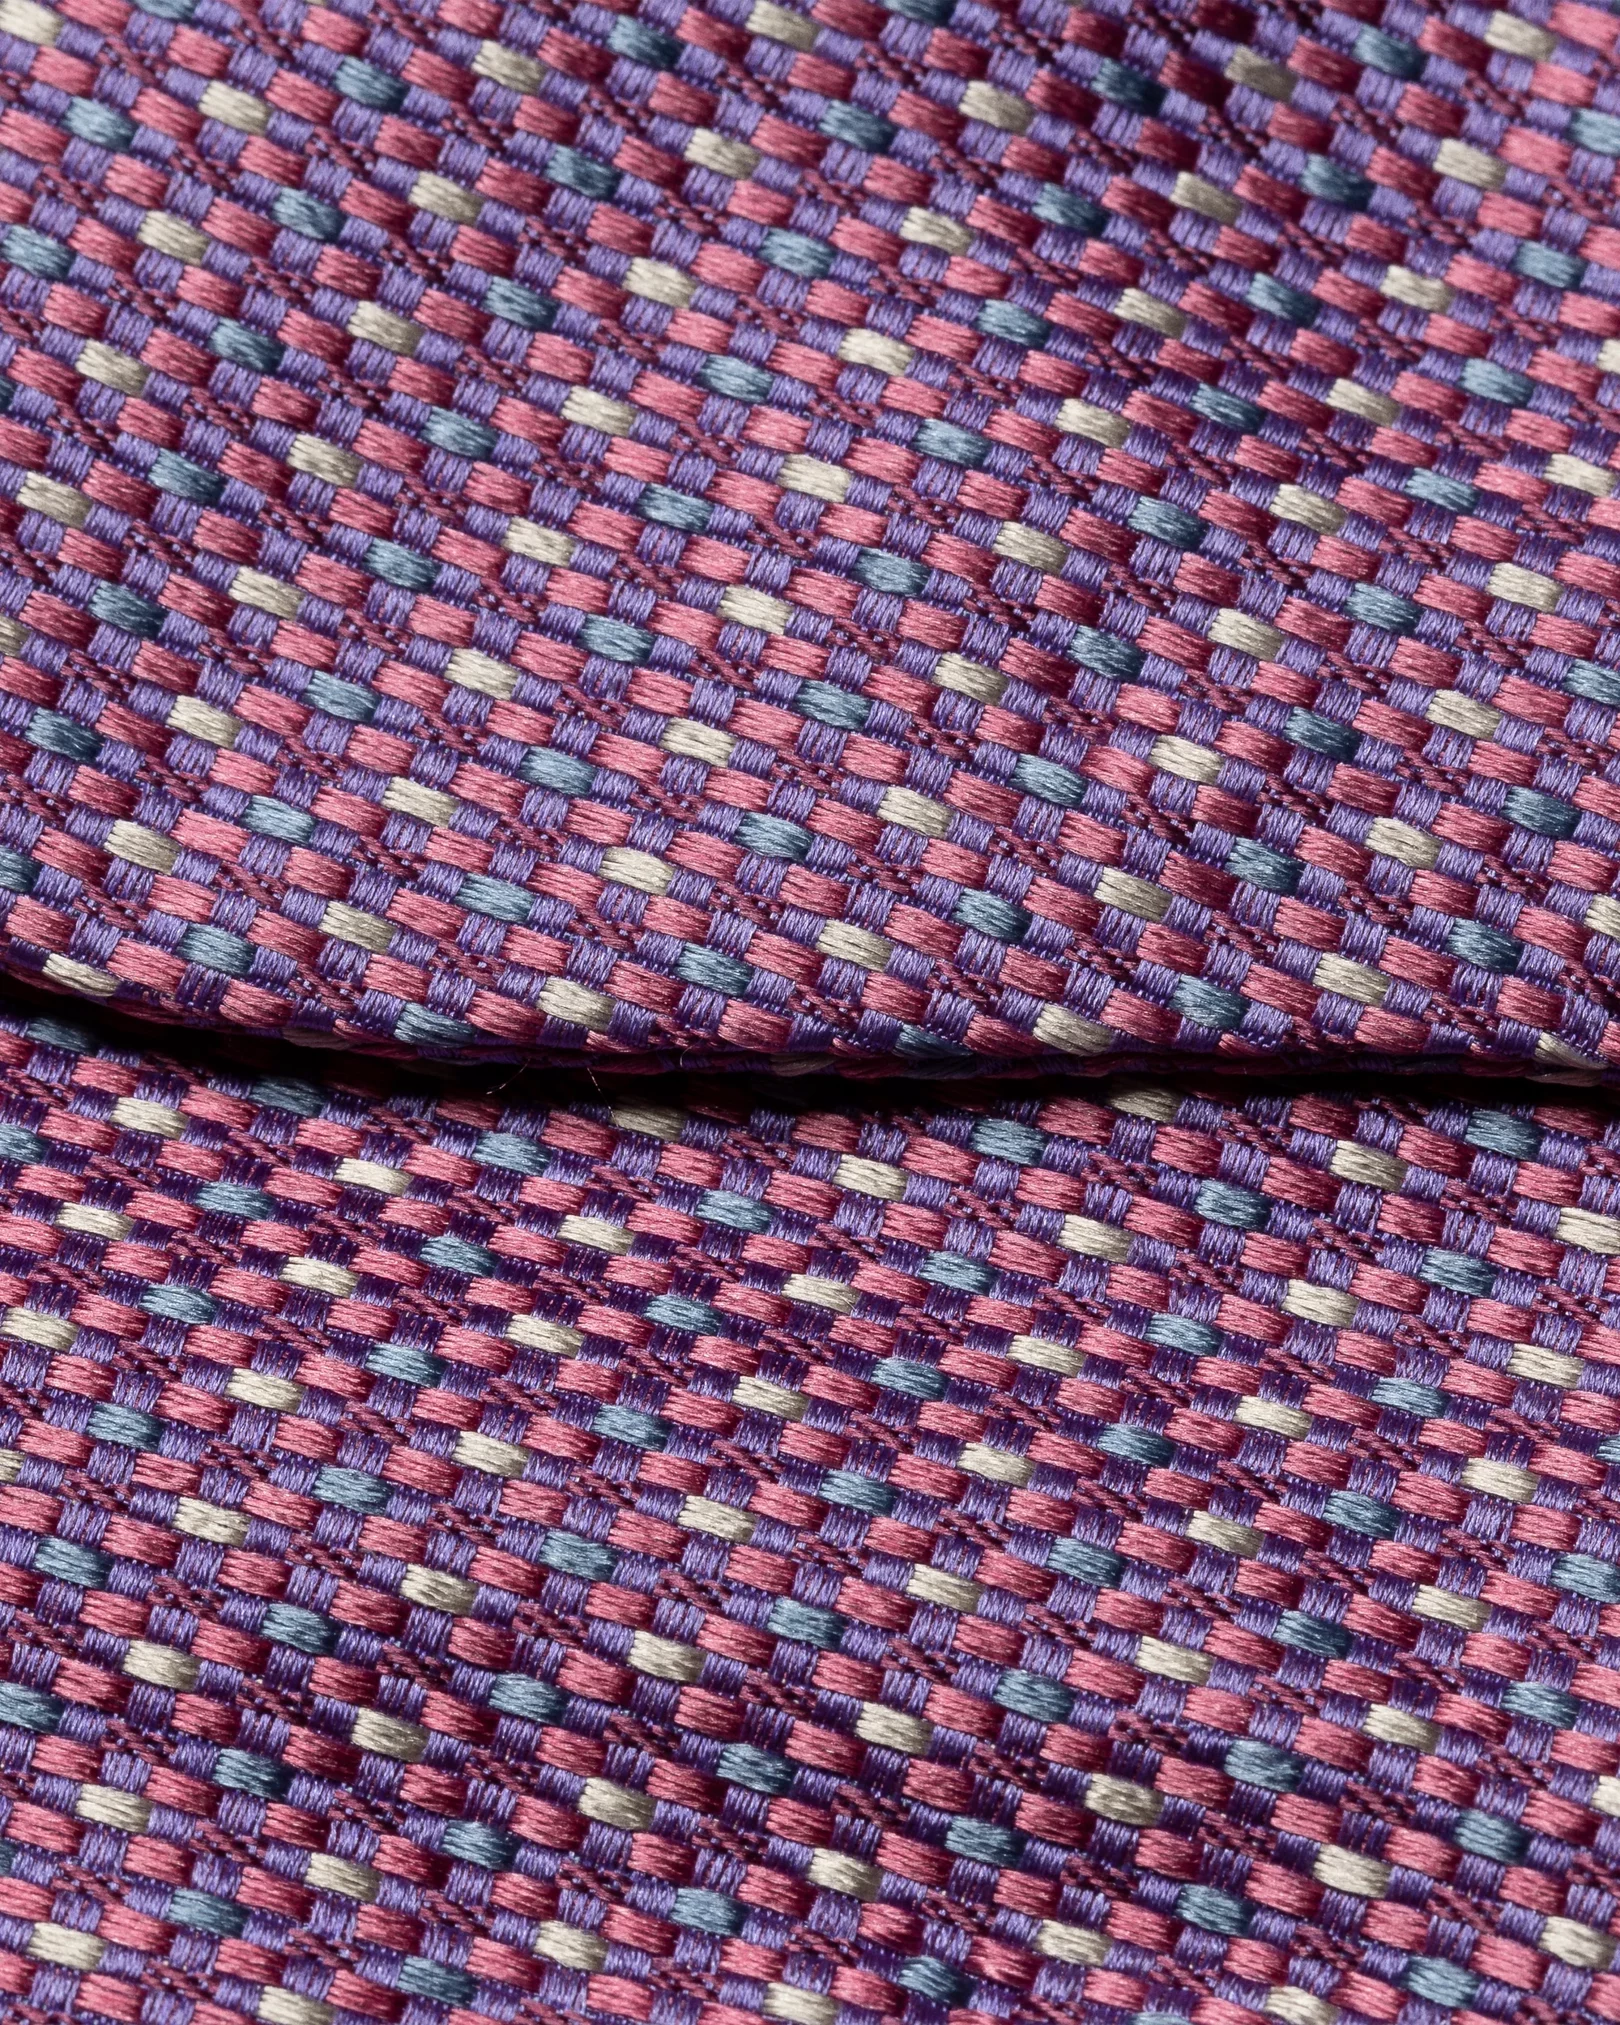 Eton - dark purple bow tie